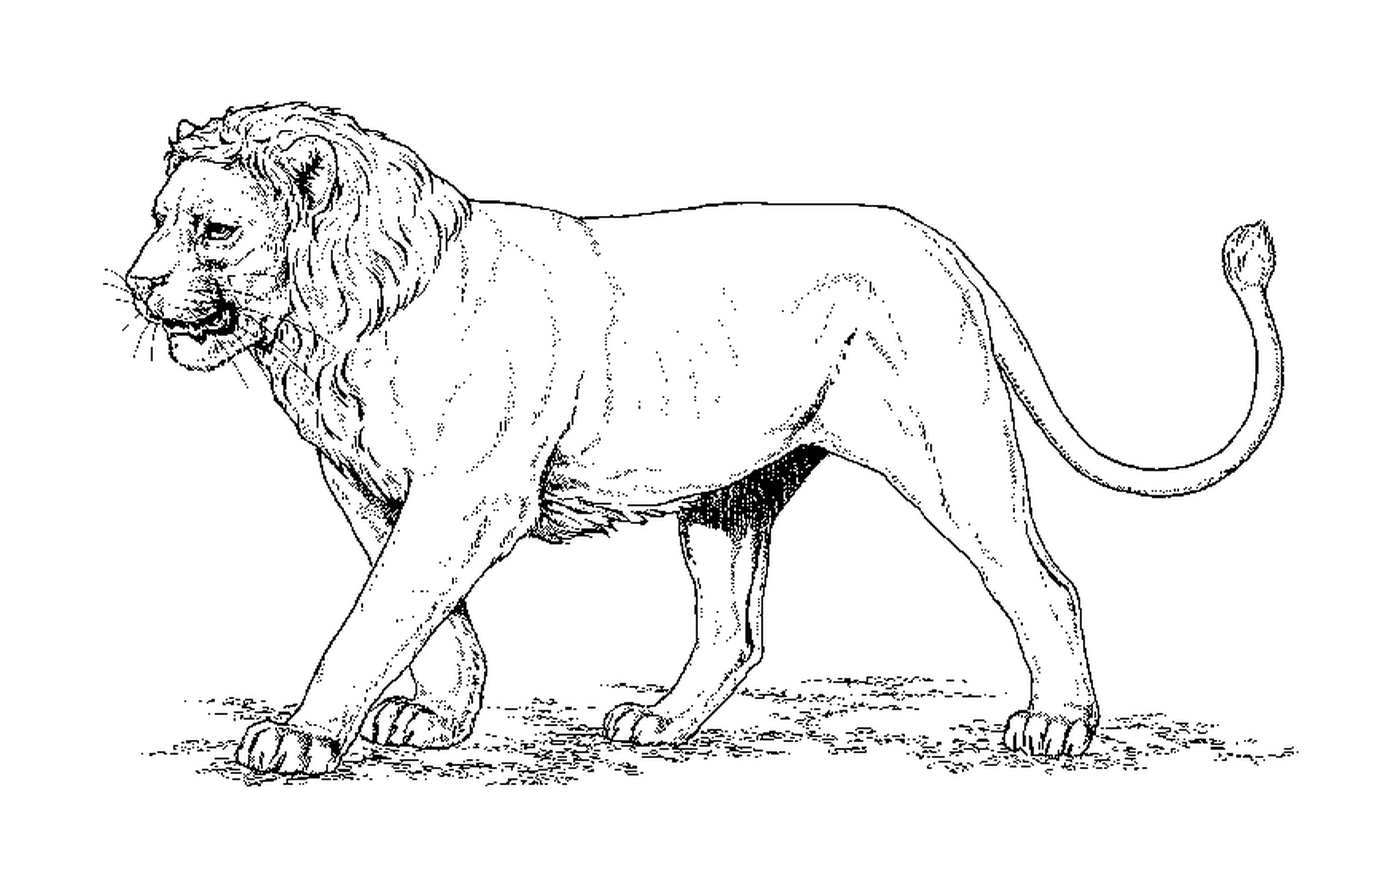  Leão da África Ocidental 